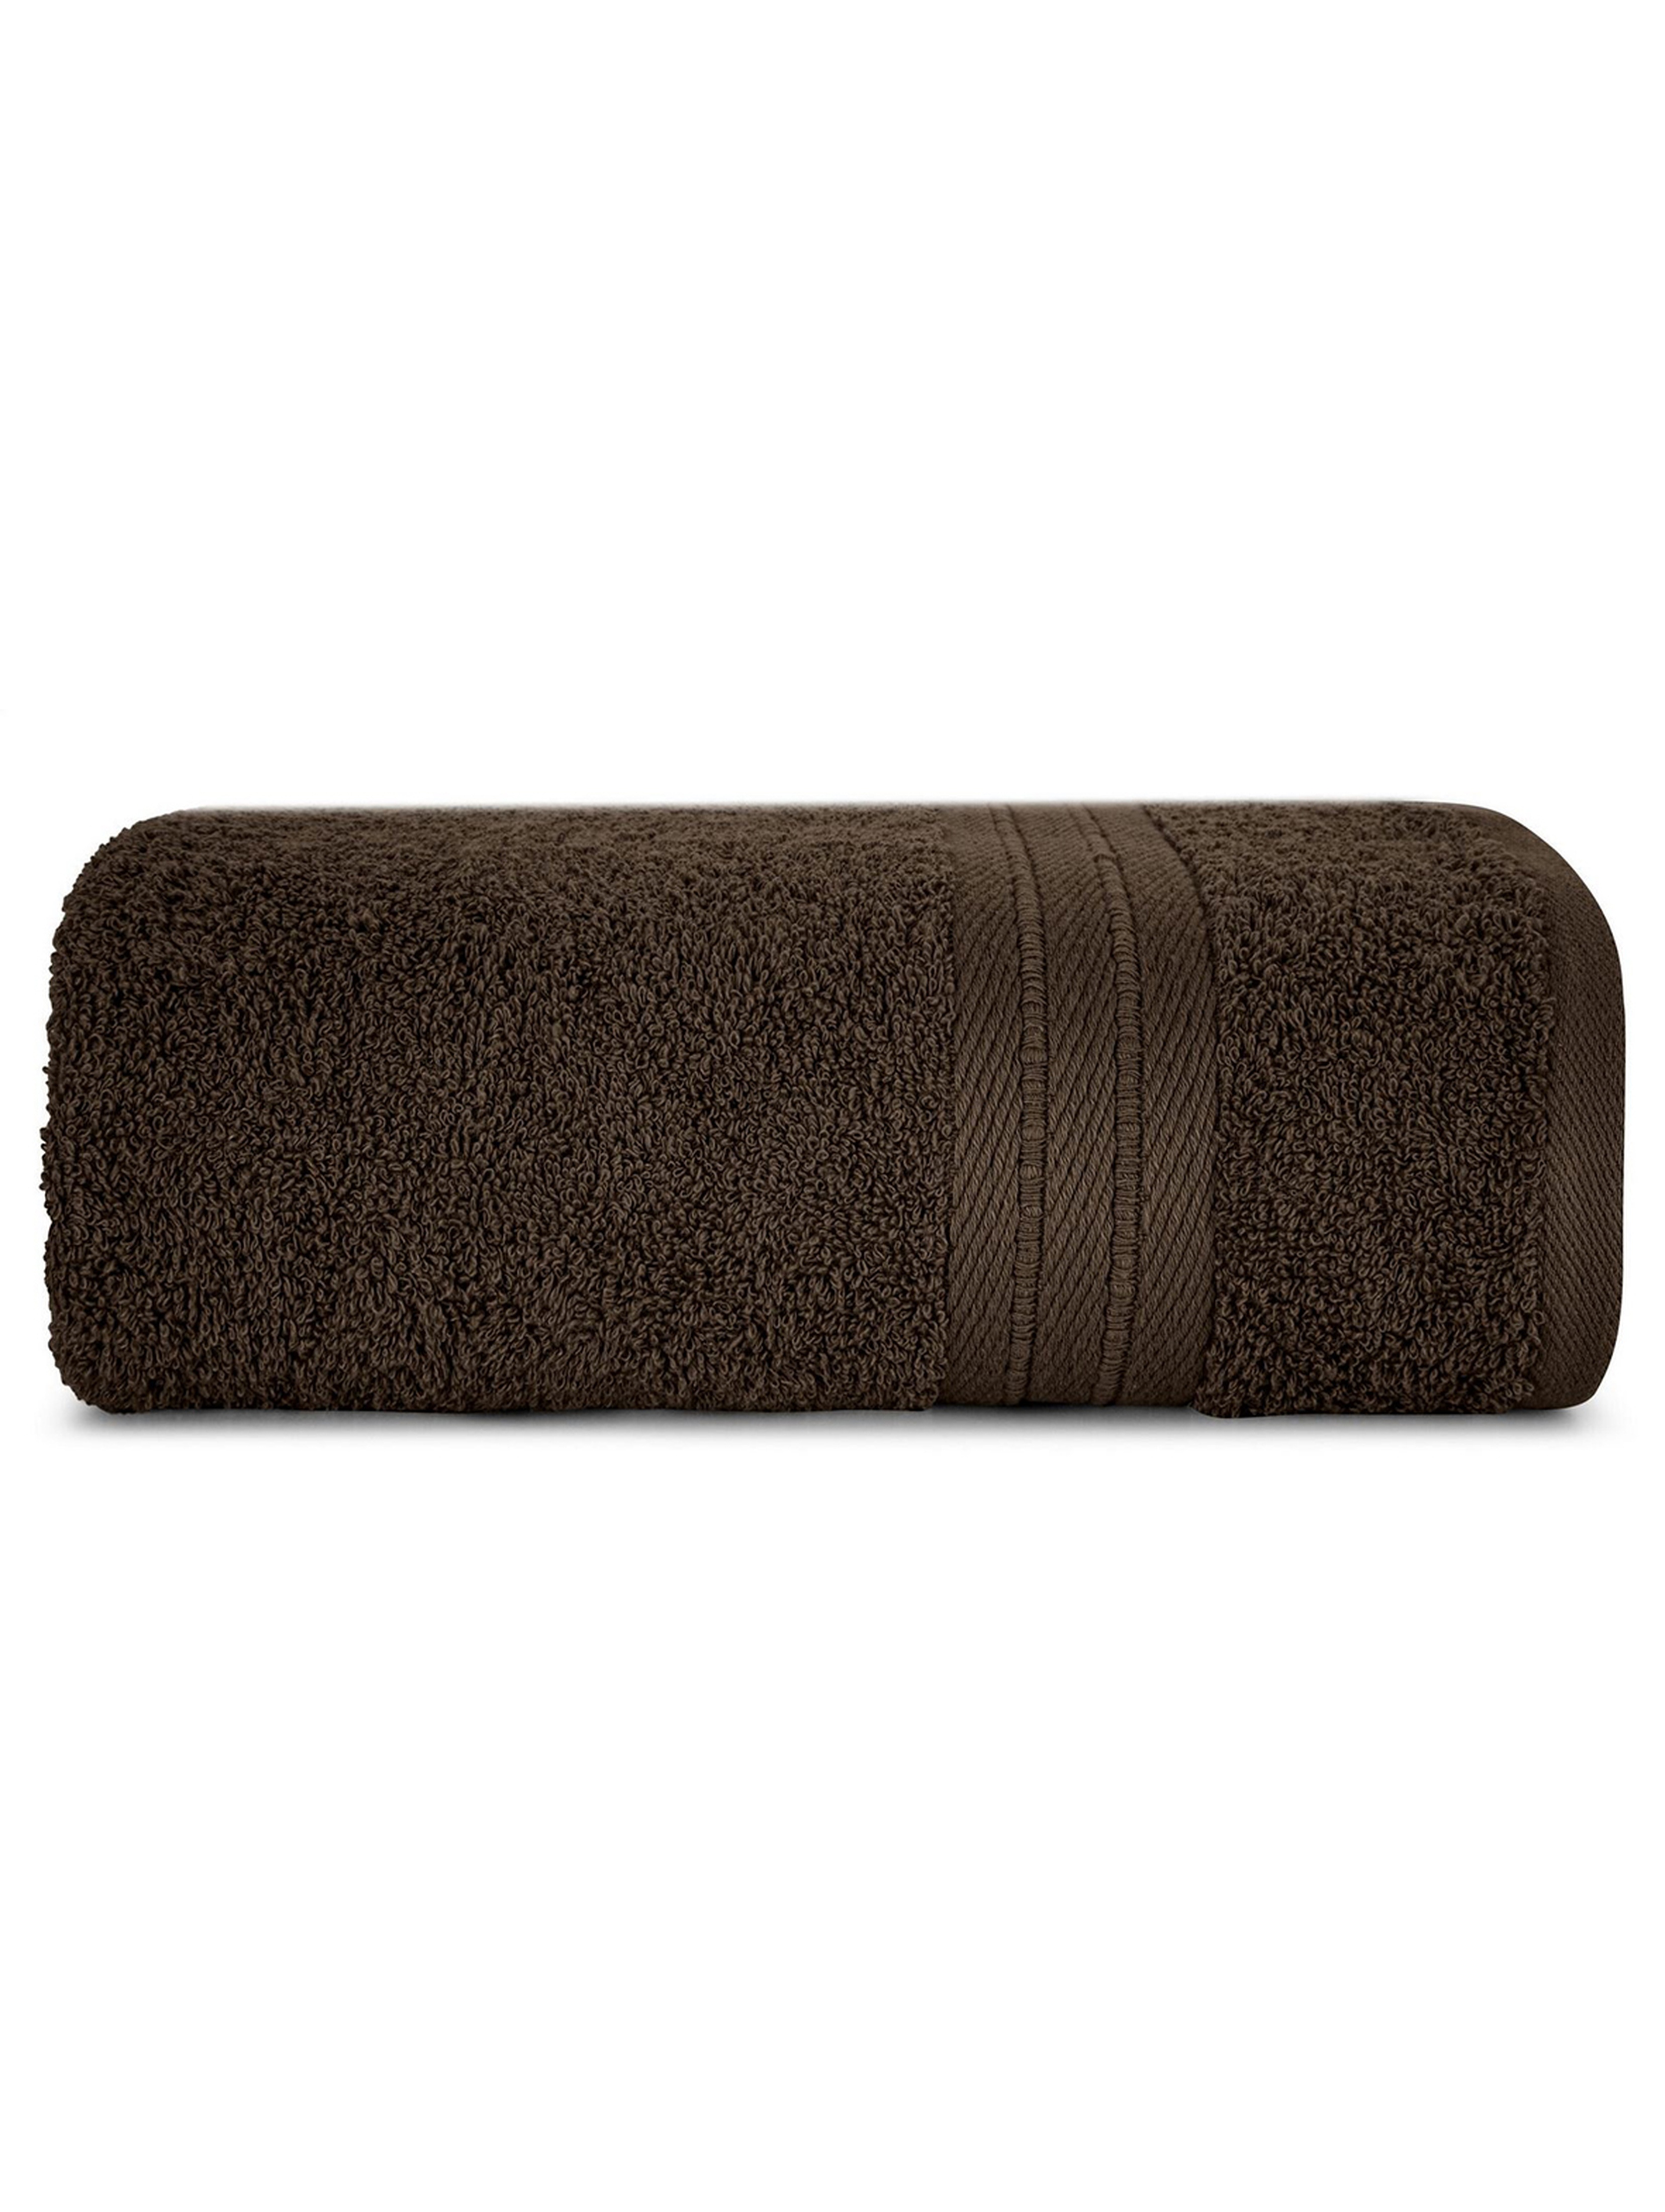 Ręcznik kaya (09) 50x90 cm brązowy